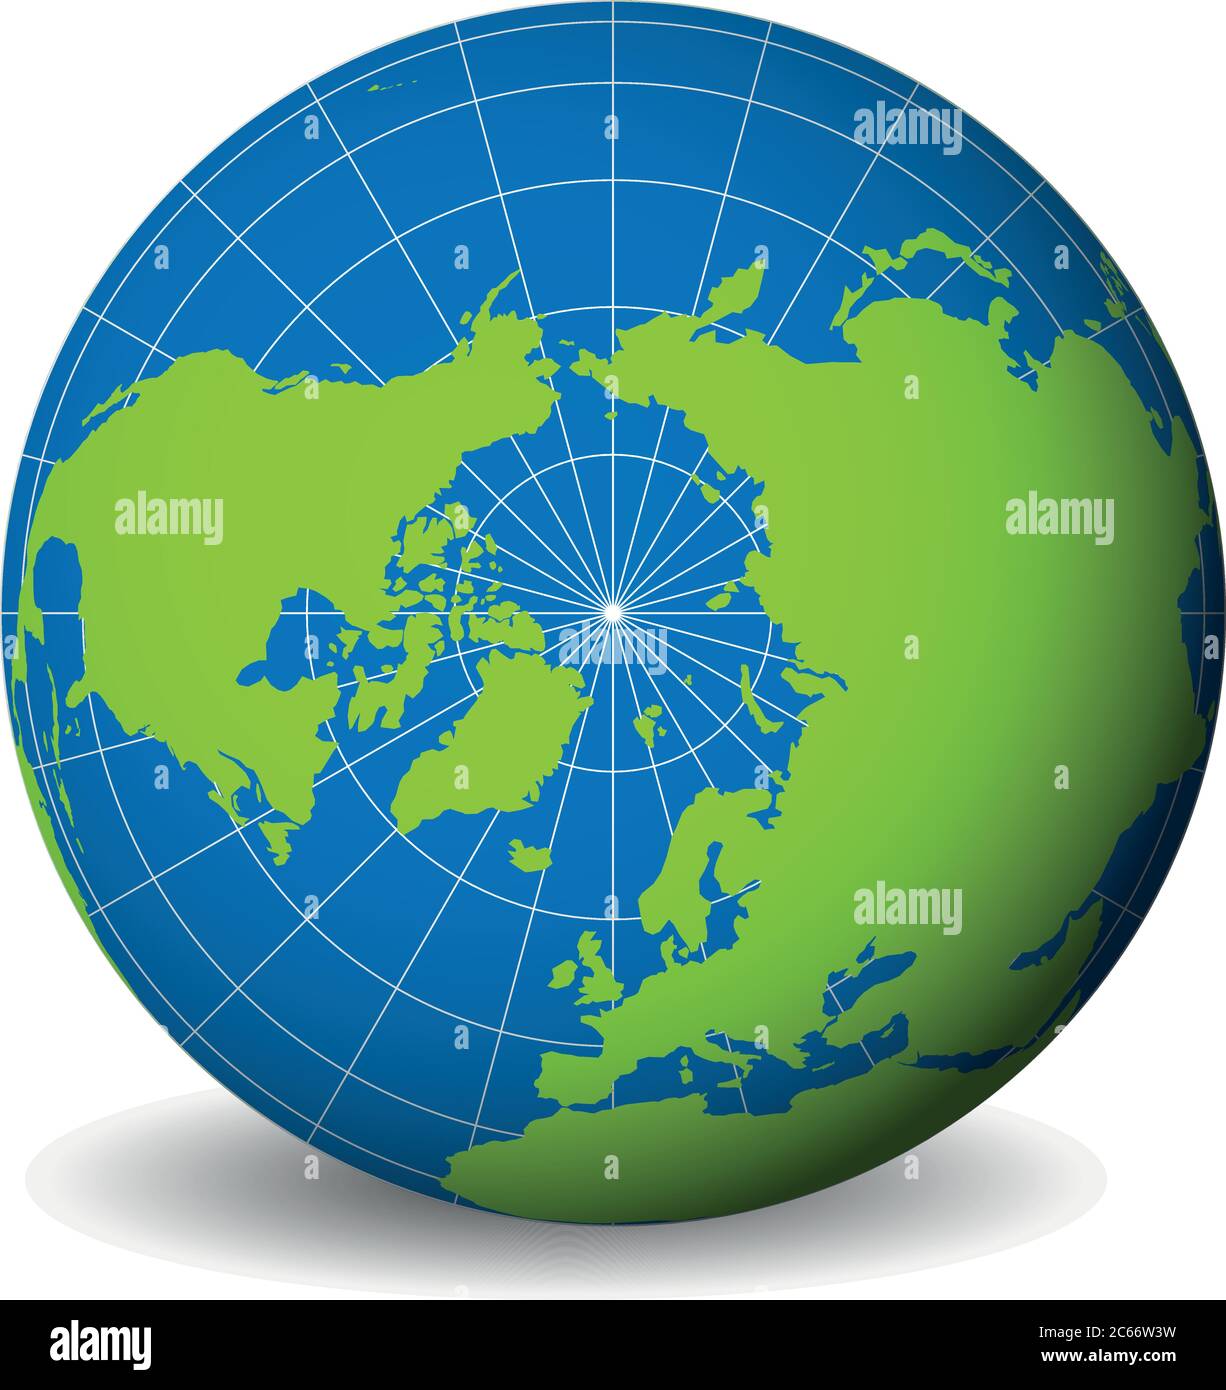 Globo terrestre con mappa del mondo verde e mari blu e oceani focalizzati sull'Oceano Artico e sul Polo Nord. Con sottili meridiani bianchi e paralleli. Illustrazione vettoriale 3D. Illustrazione Vettoriale